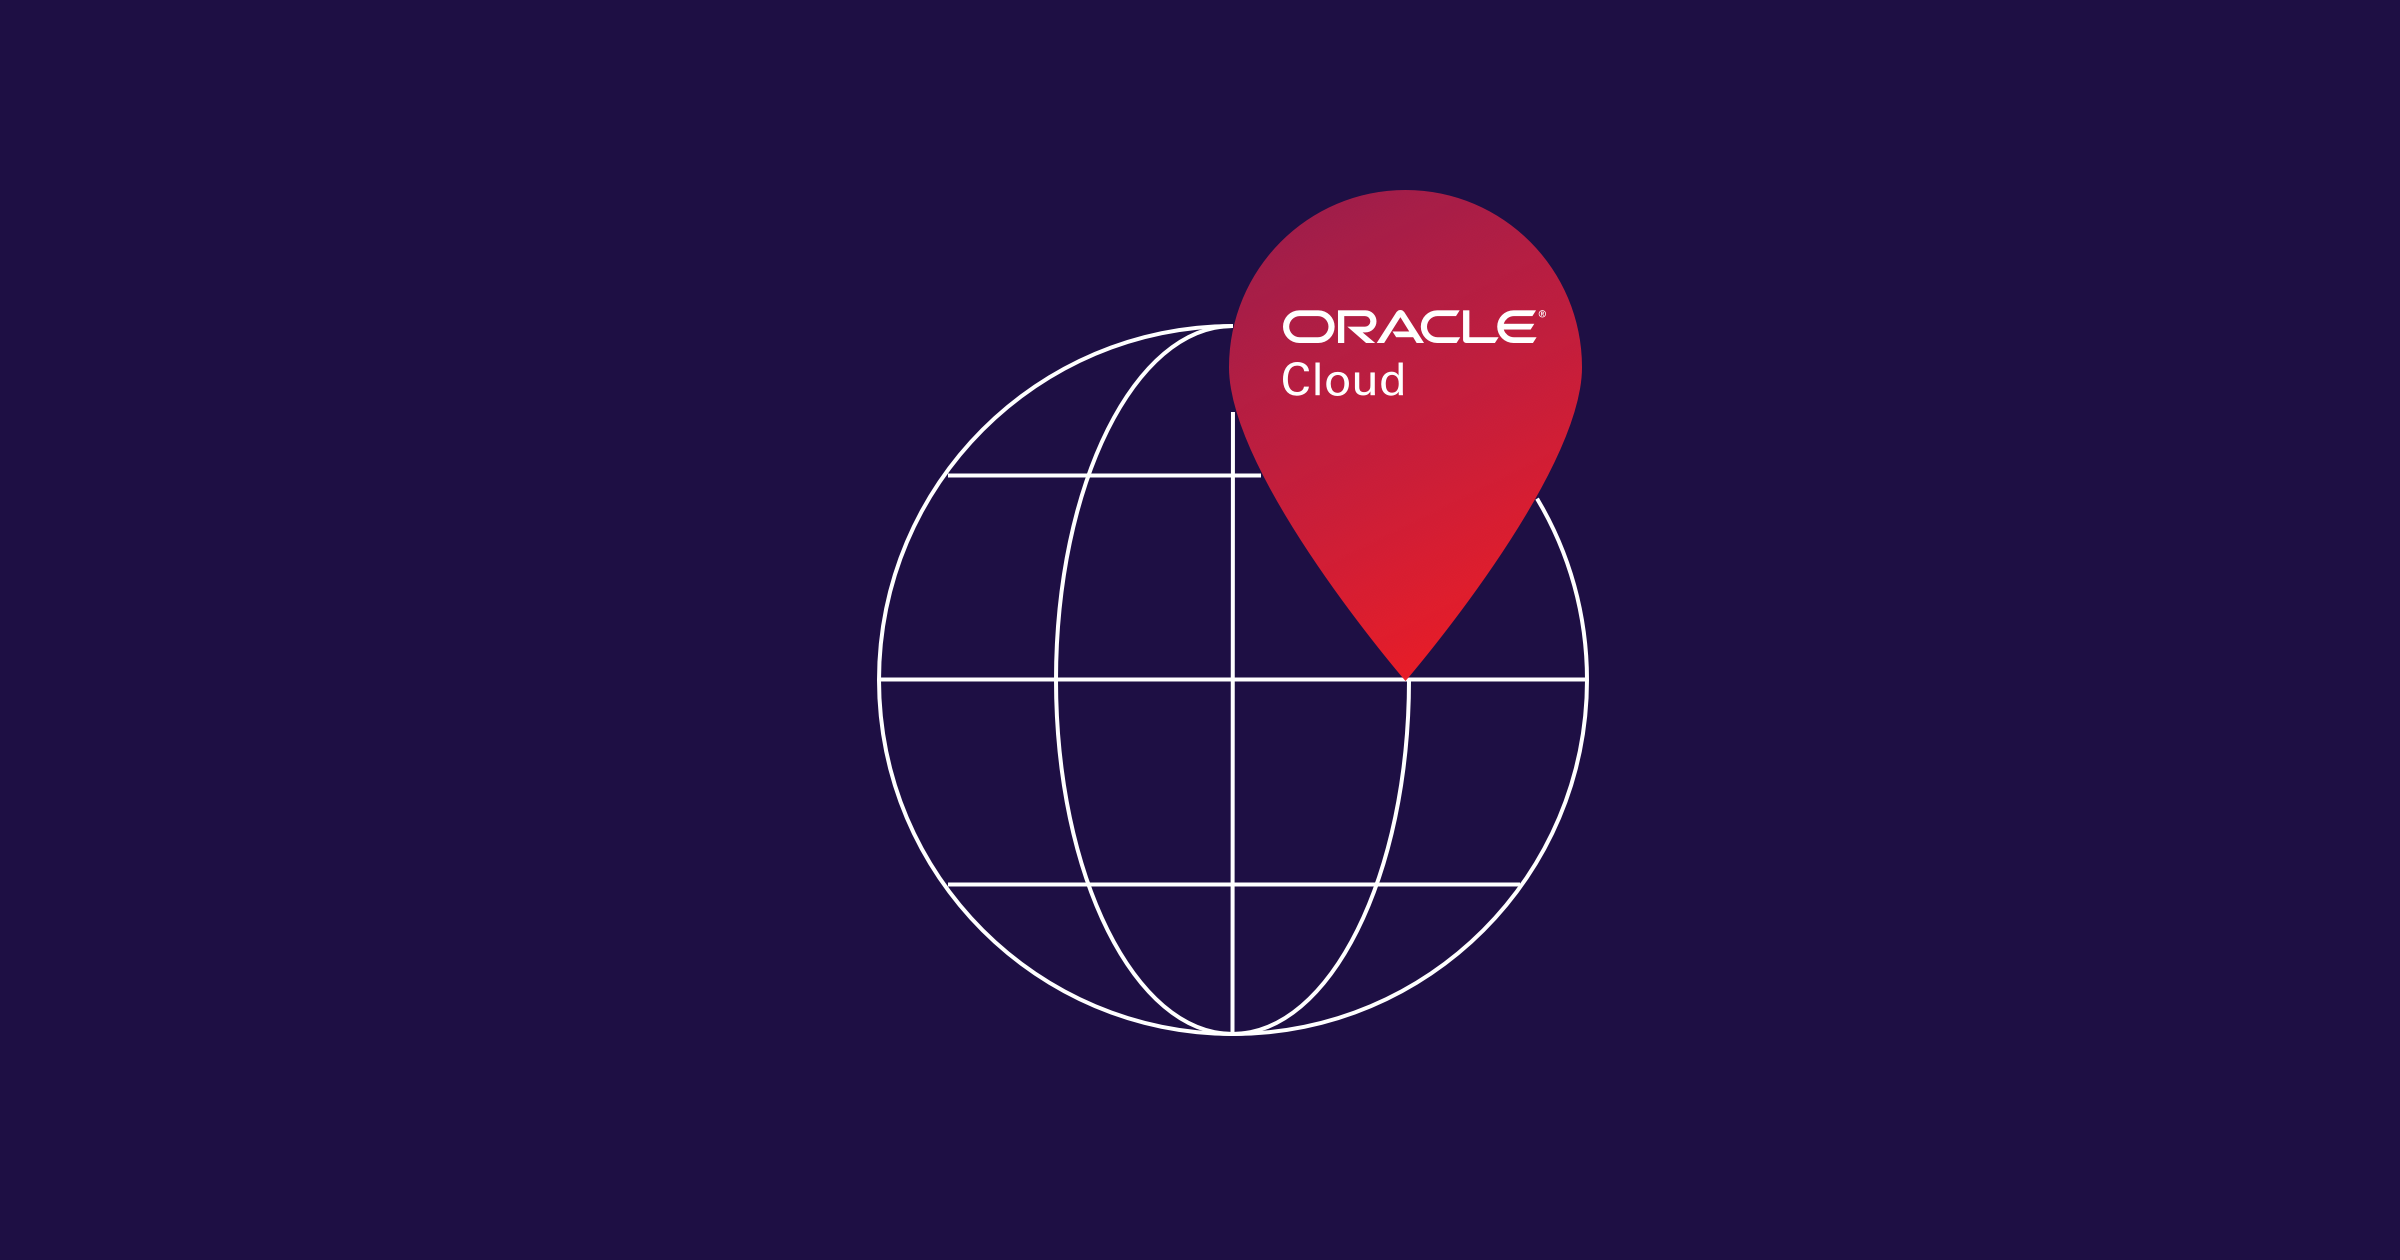 Oracle Cloud Adds New Regions in Europe